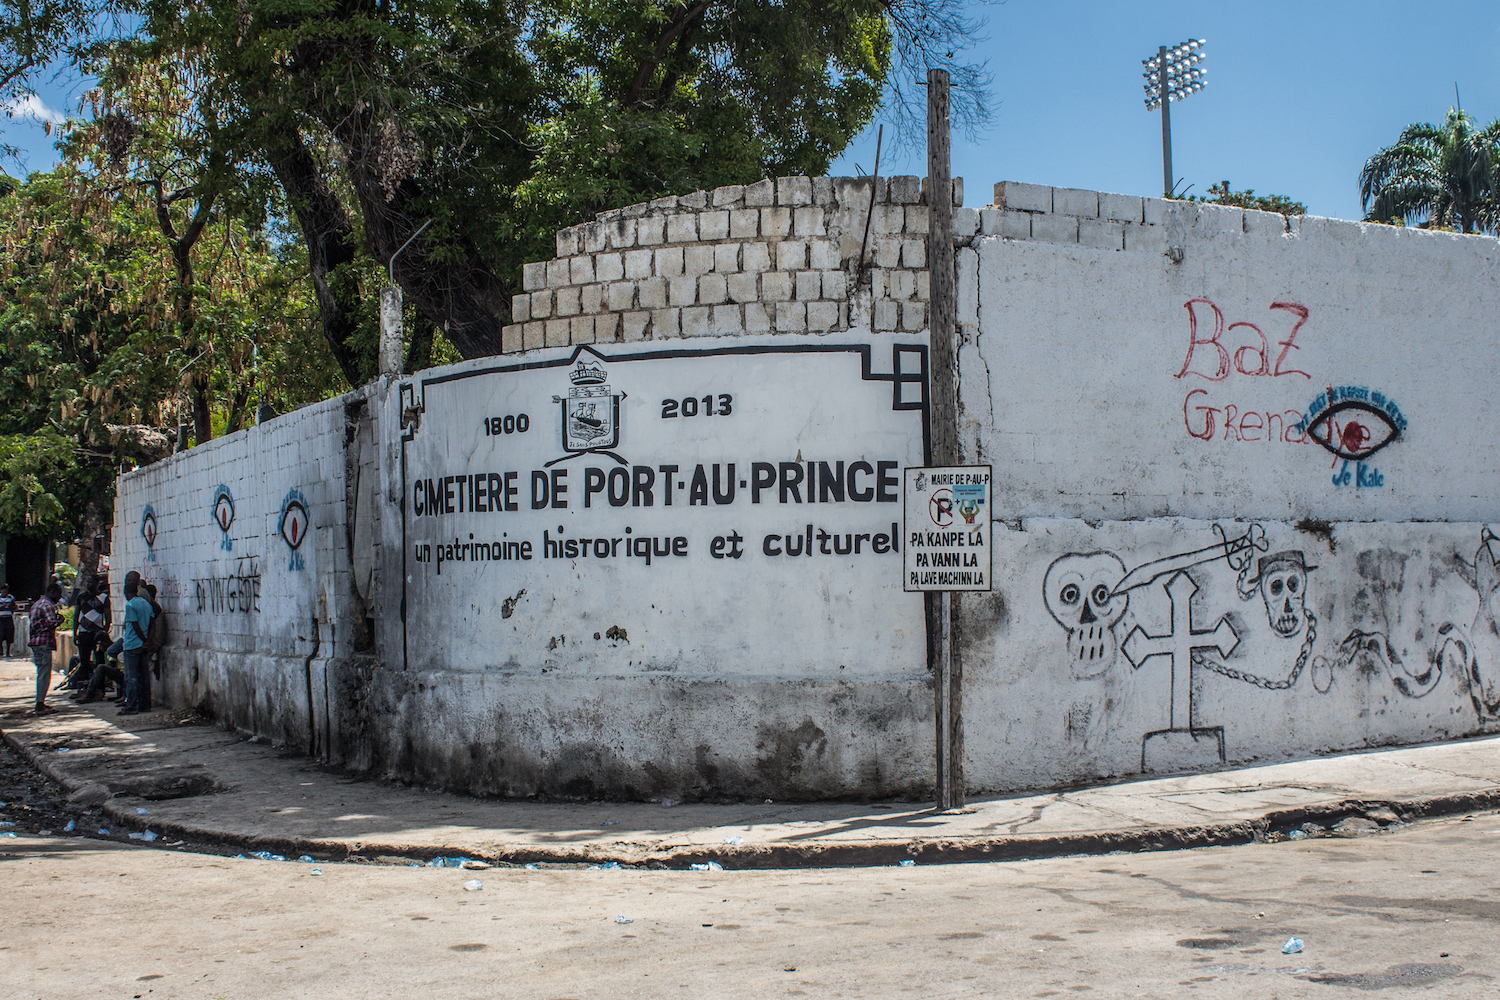 A painted sign announces the Cimetière de Port-au-Prince © Darmon Richter http://www.thebohemianblog.com/2015/04/haitian-vodou-port-au-prince.html